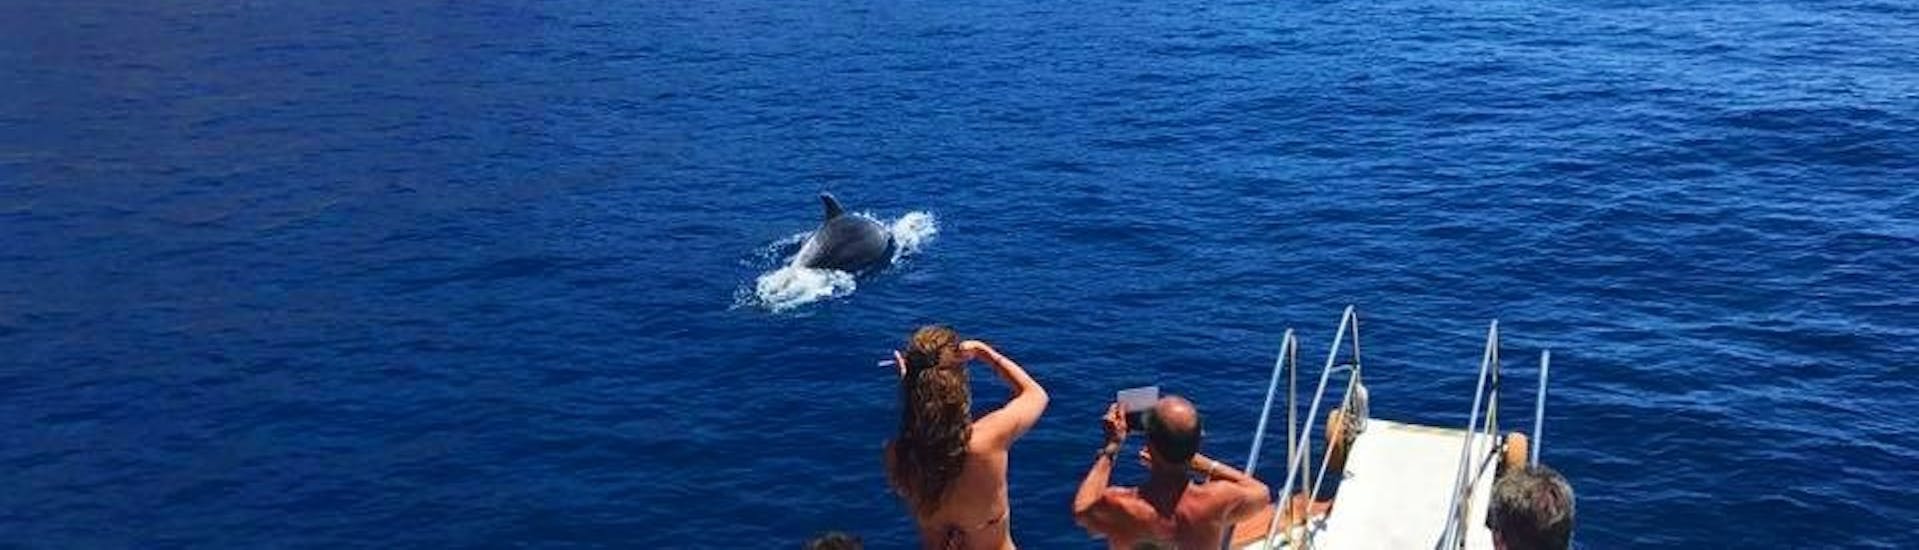 Avvistamento delfini durante una gita in barca da Marina di Campo a Sant'Andrea con osservazione delfini con Baby Princess Elba.